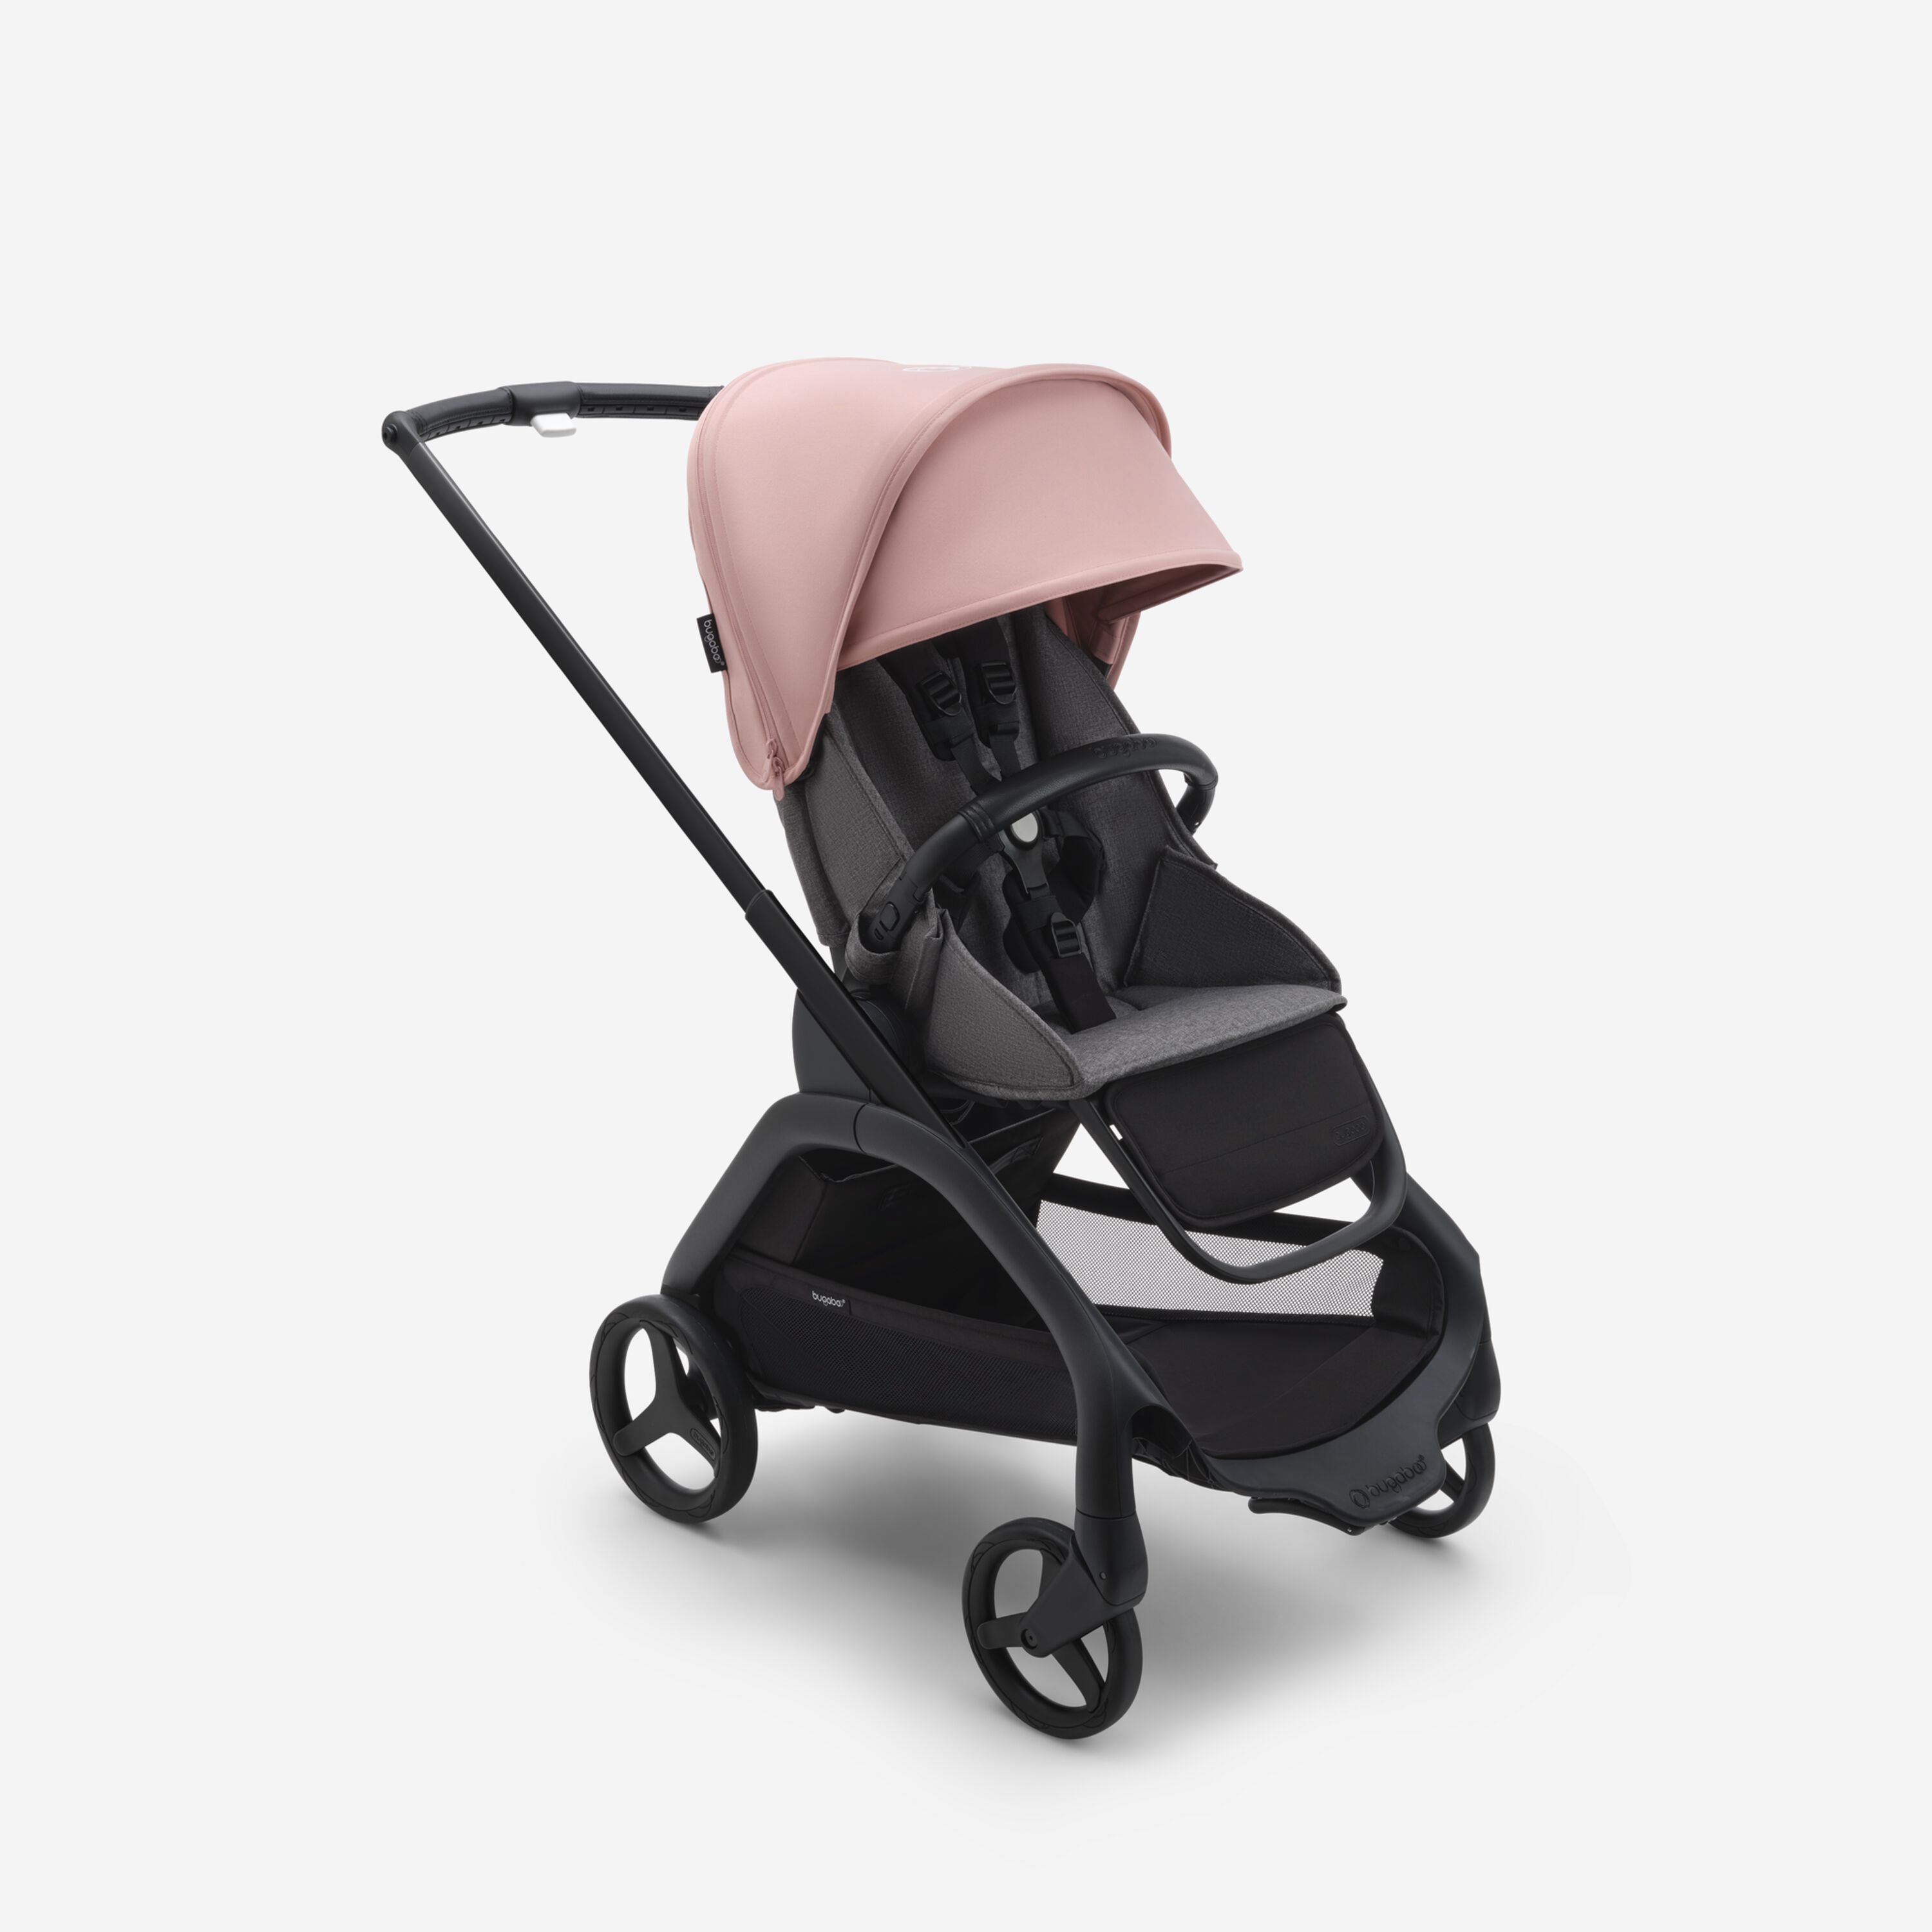 Коляска прогулочная Bugaboo Dragonfly Black, Grey Melange, Morning pink, 6м+ прогулочная коляска mutsy nexo concrete melange для новорожденных и детей до 22 кг